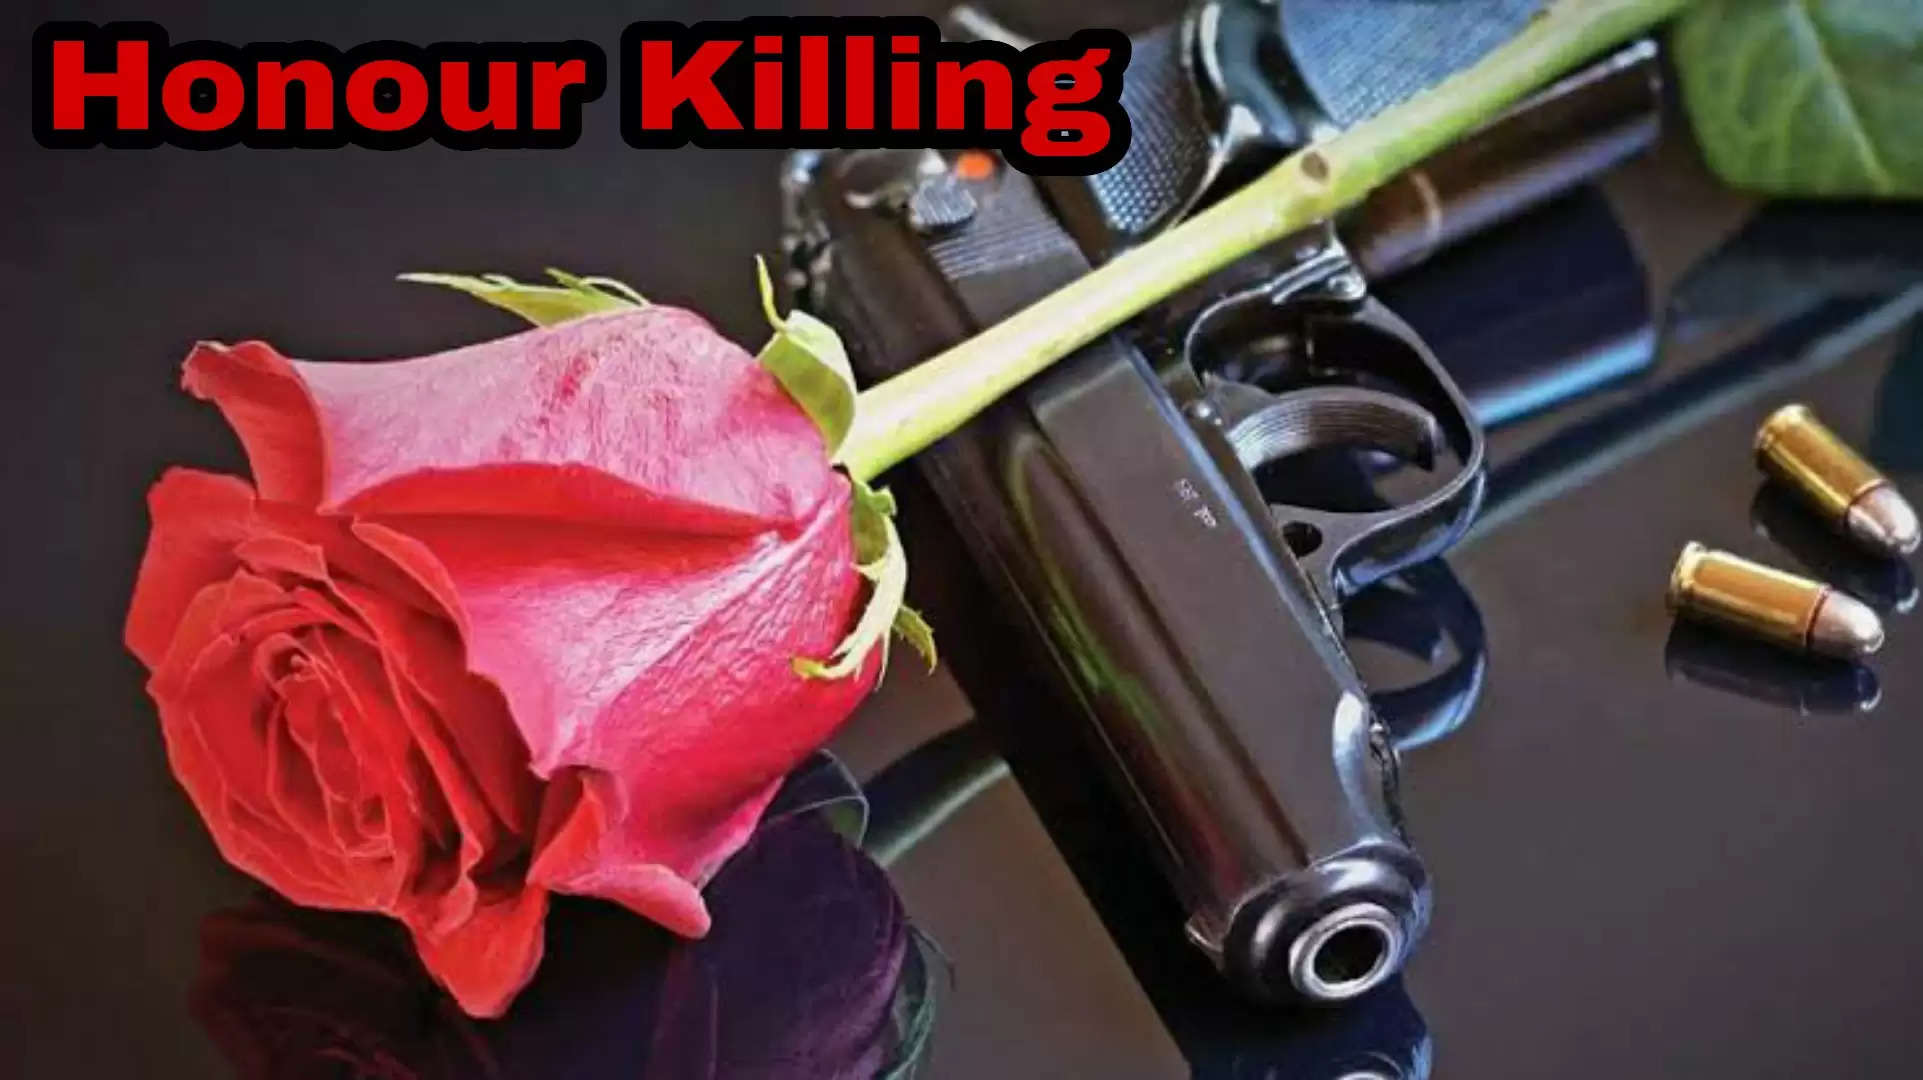 प्रेमी युगल का शव मिलने के बाद हत्या और आत्महत्या की जाँच में जुटी पुलिस